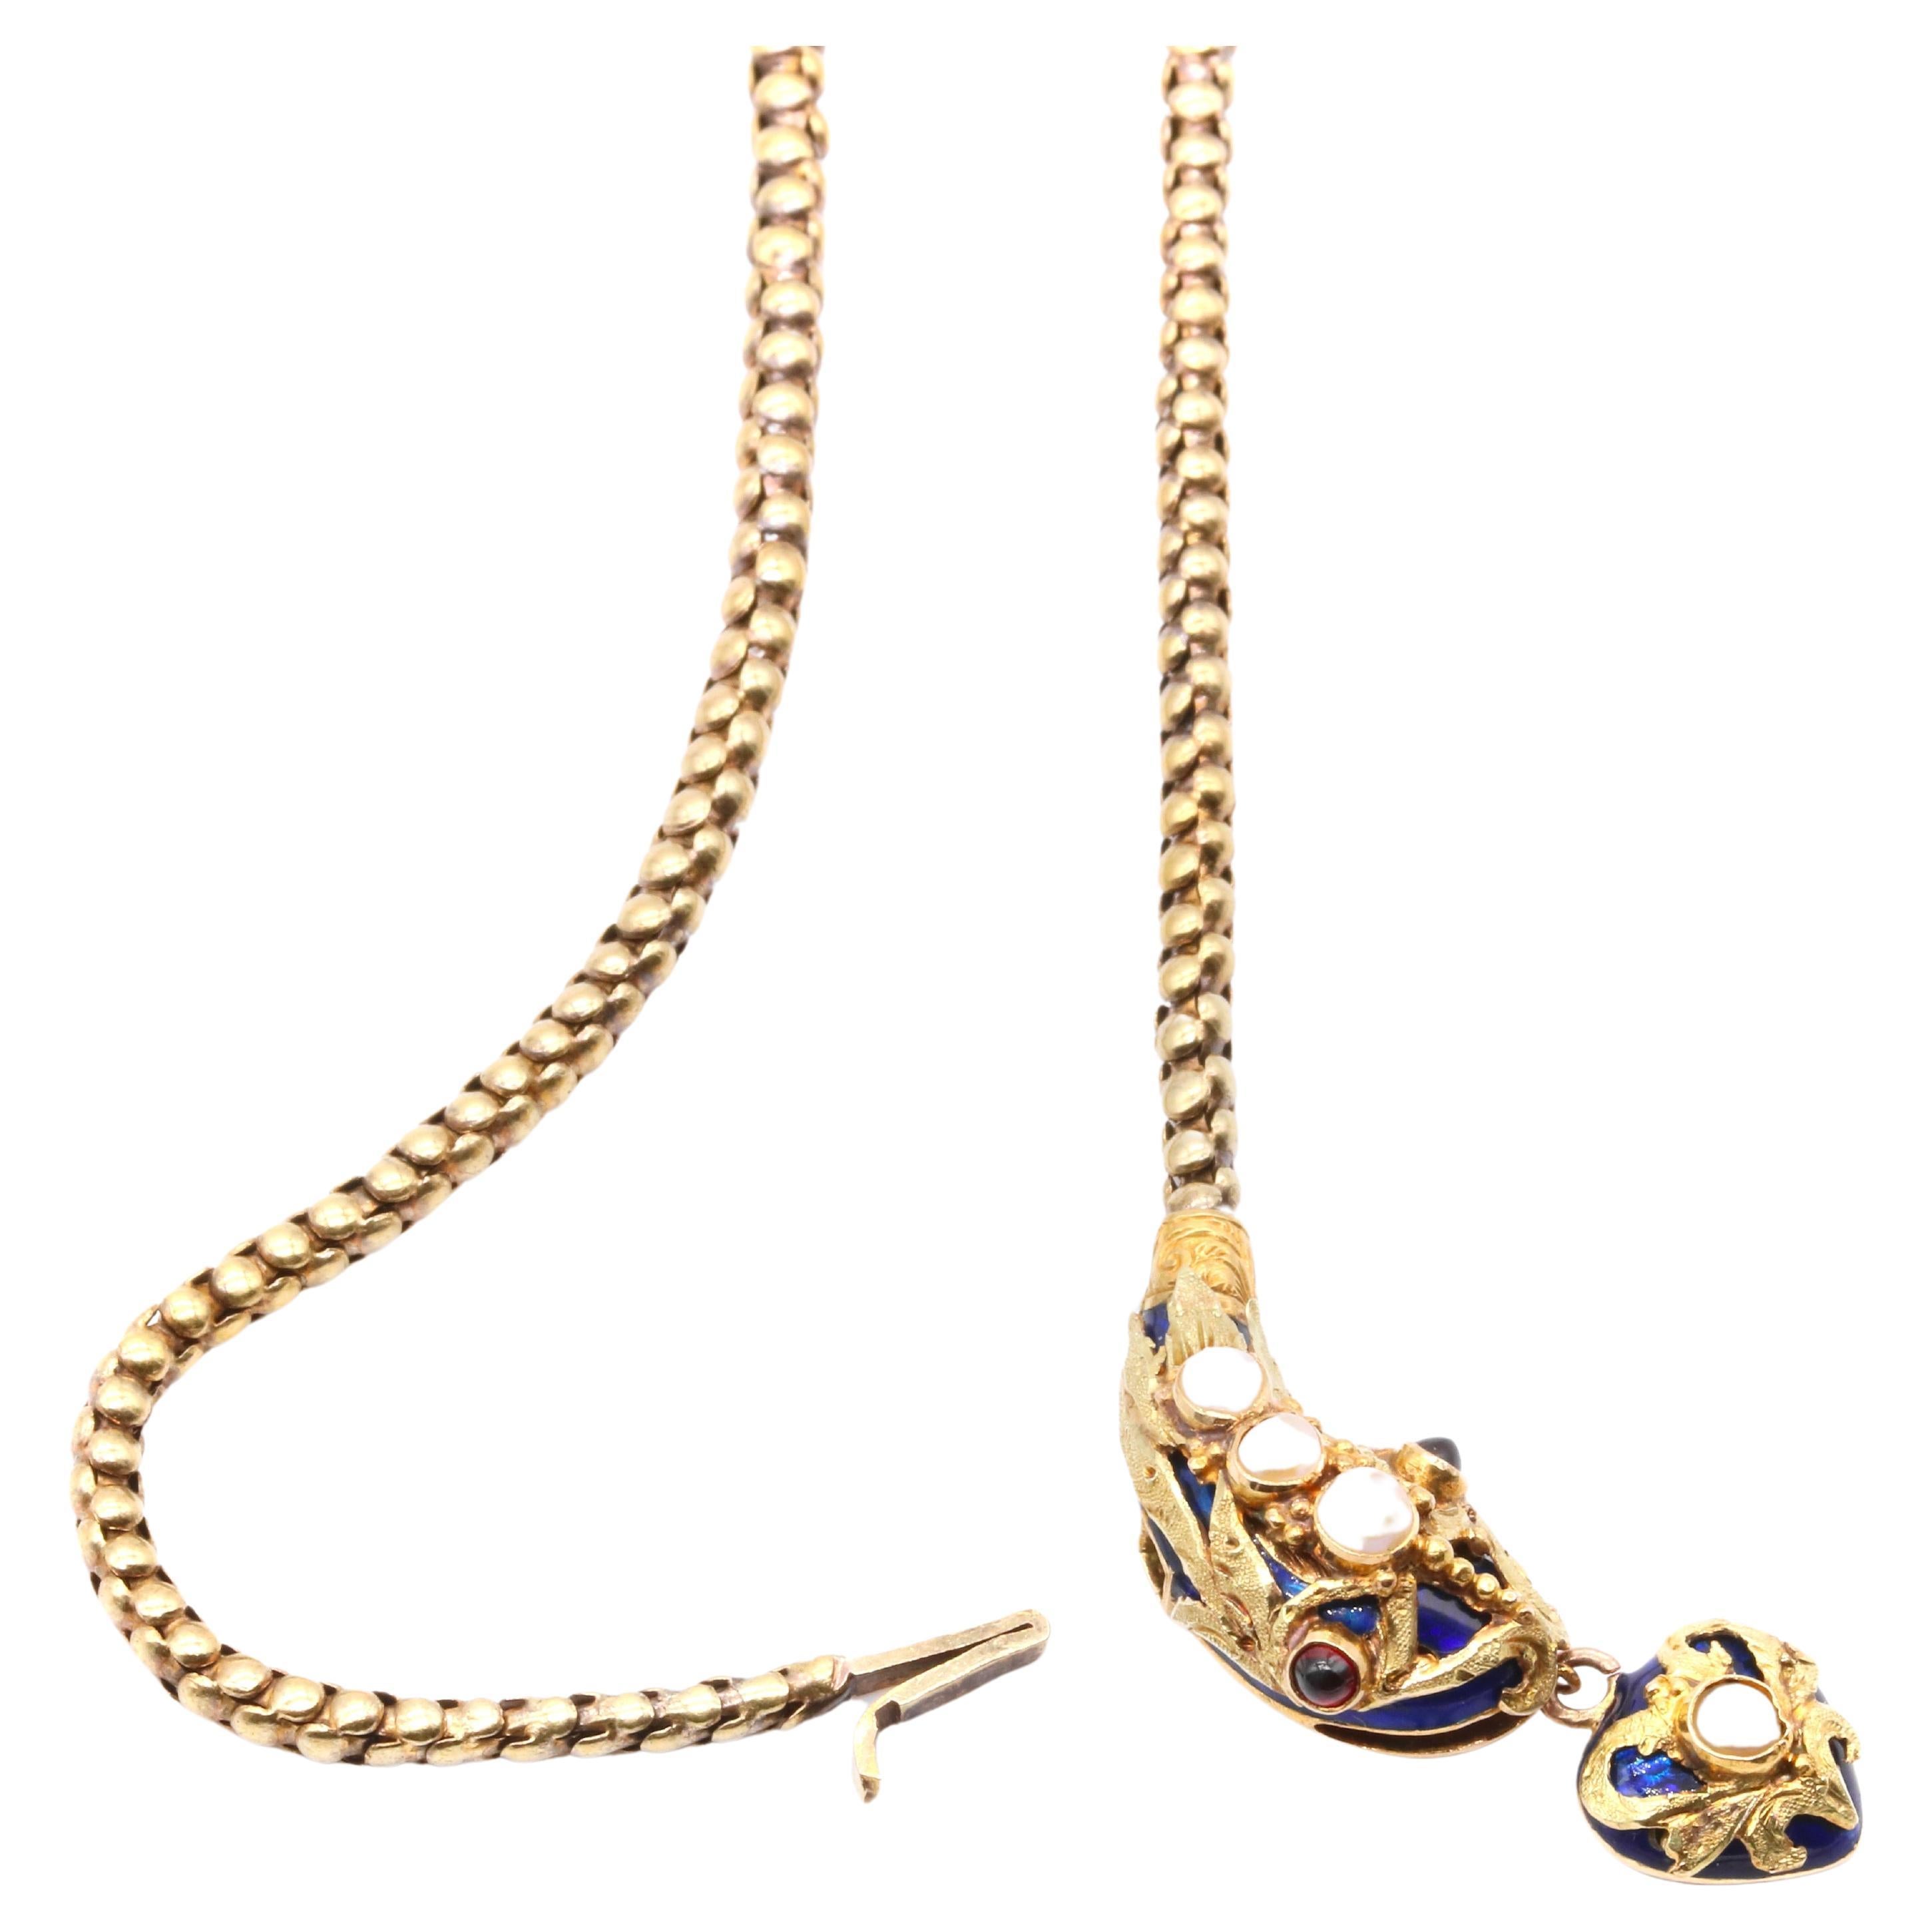 Antique Victorian 1850s 18K Gold Blue Enamel Pearl & Garnet Snake Necklace For Sale